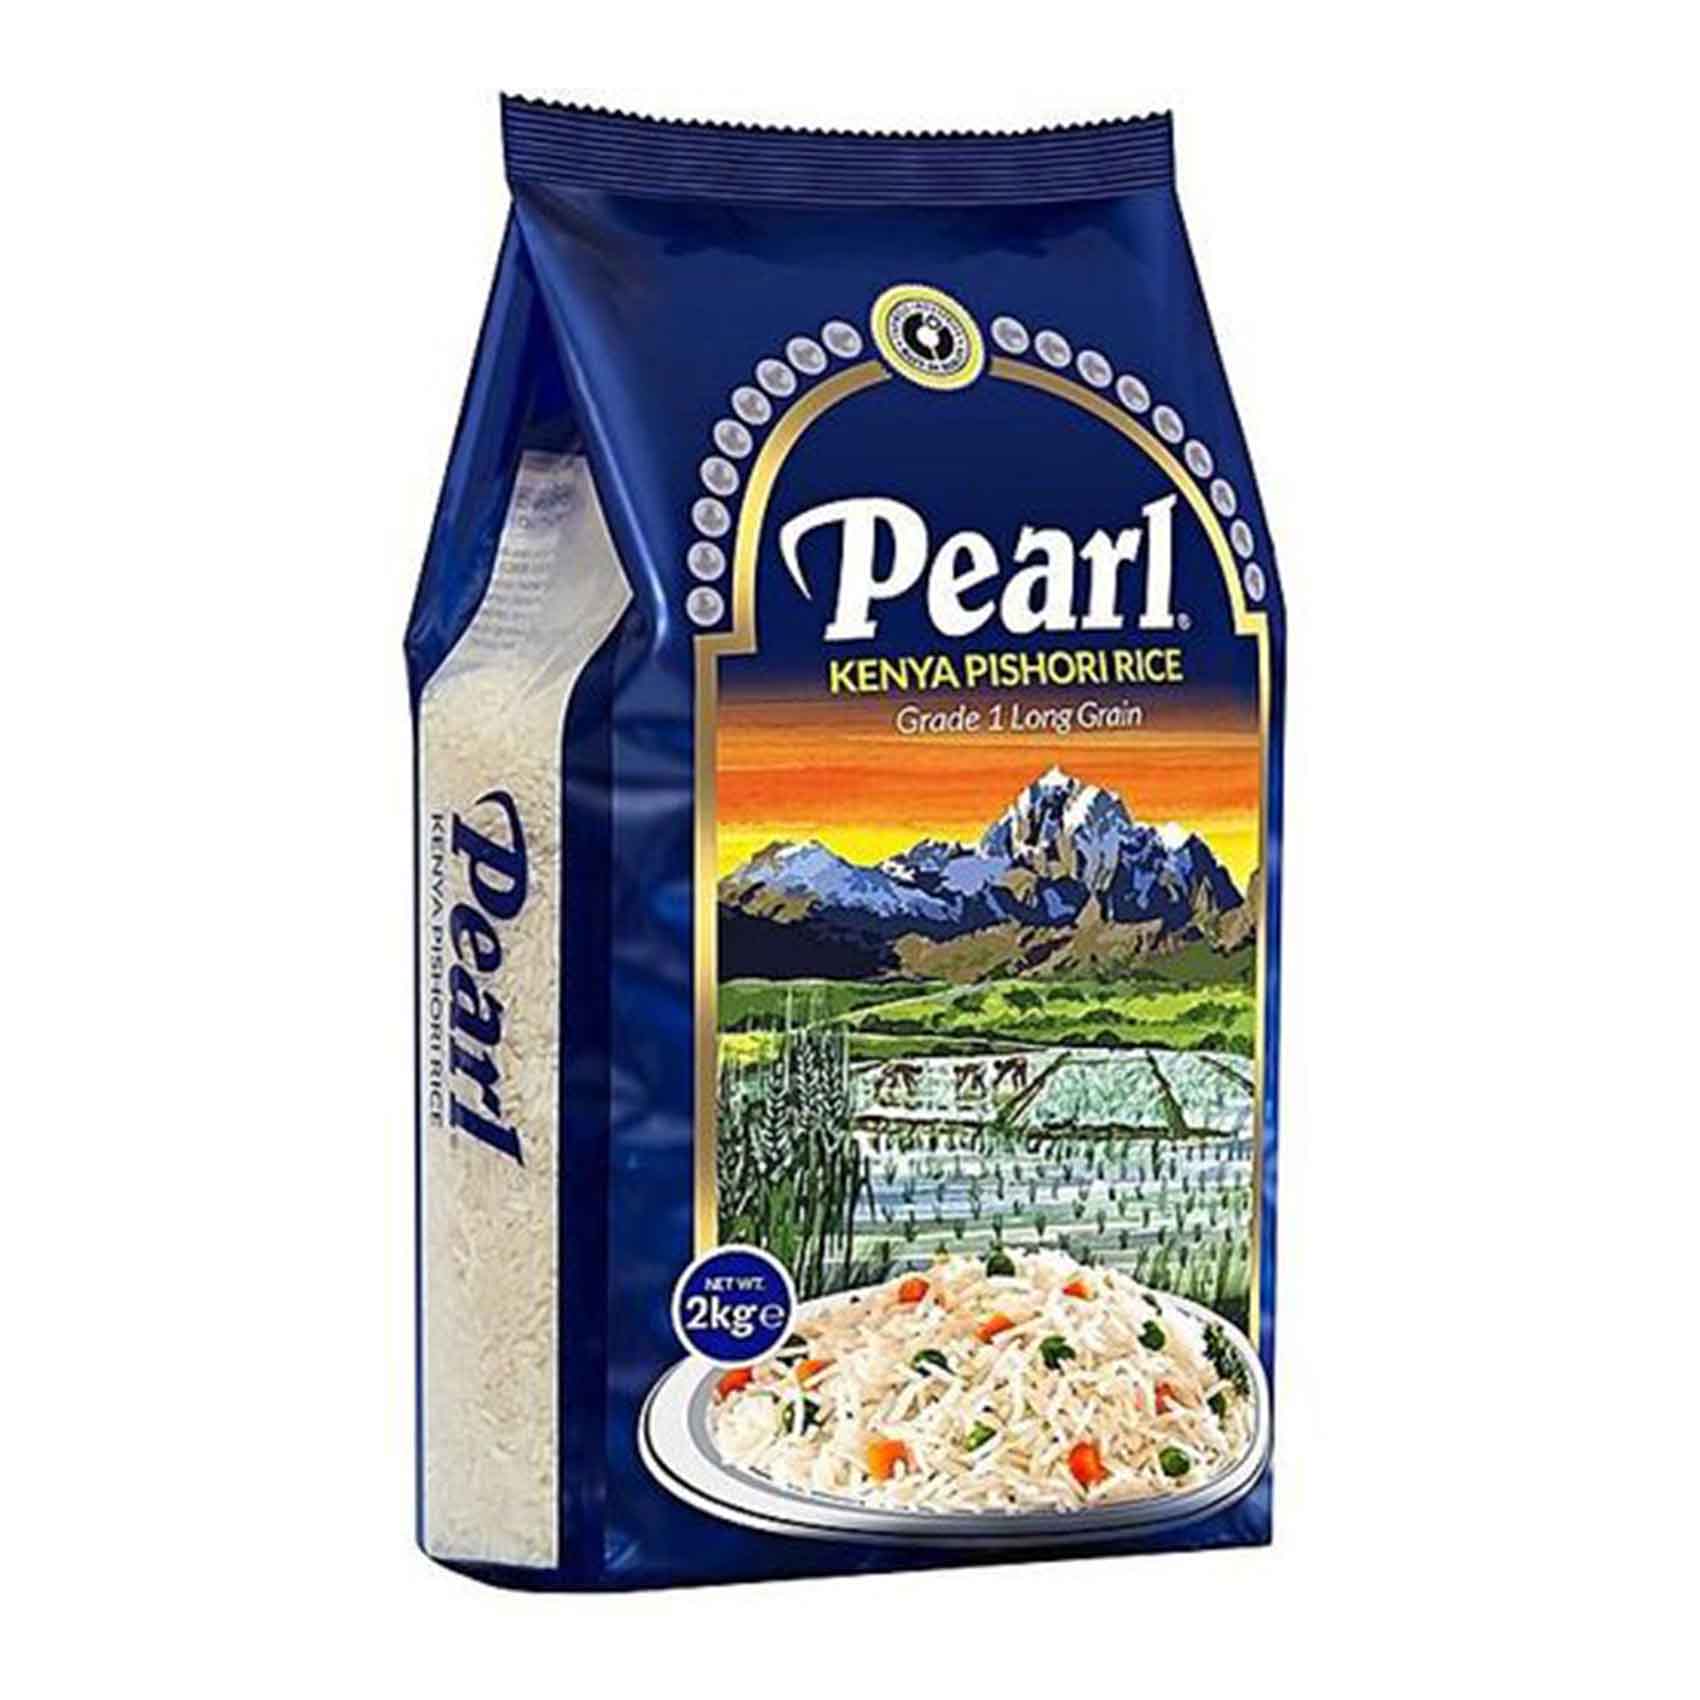 Pearl Grade 1 Long Grain Kenya Pishori Rice 2Kg